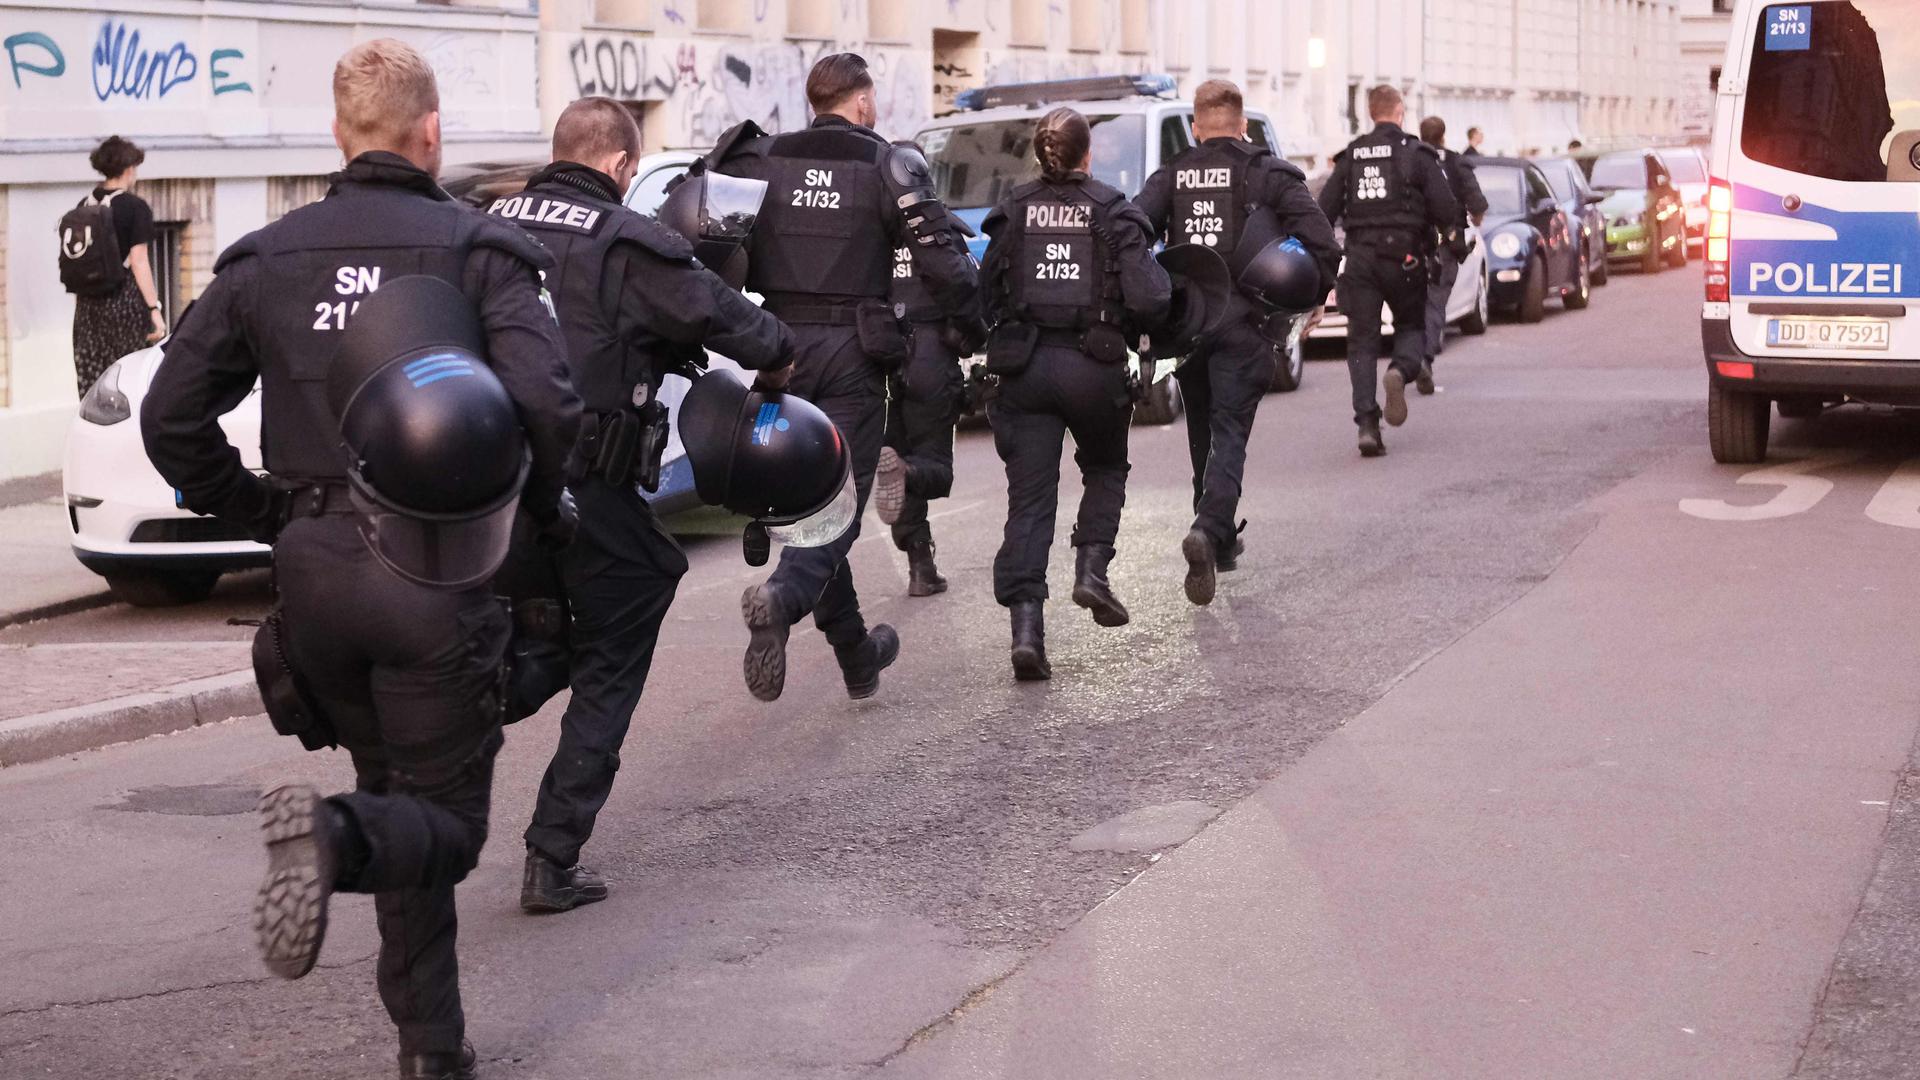 Polizisten bei einer linken Demonstration. Anlass ist die Verurteilung der Linksextremstin Lina E. vor dem sächsischen Oberlandesgericht wegen Angrifffen auf Rechtsextreme. +++ dpa-Bildfunk +++